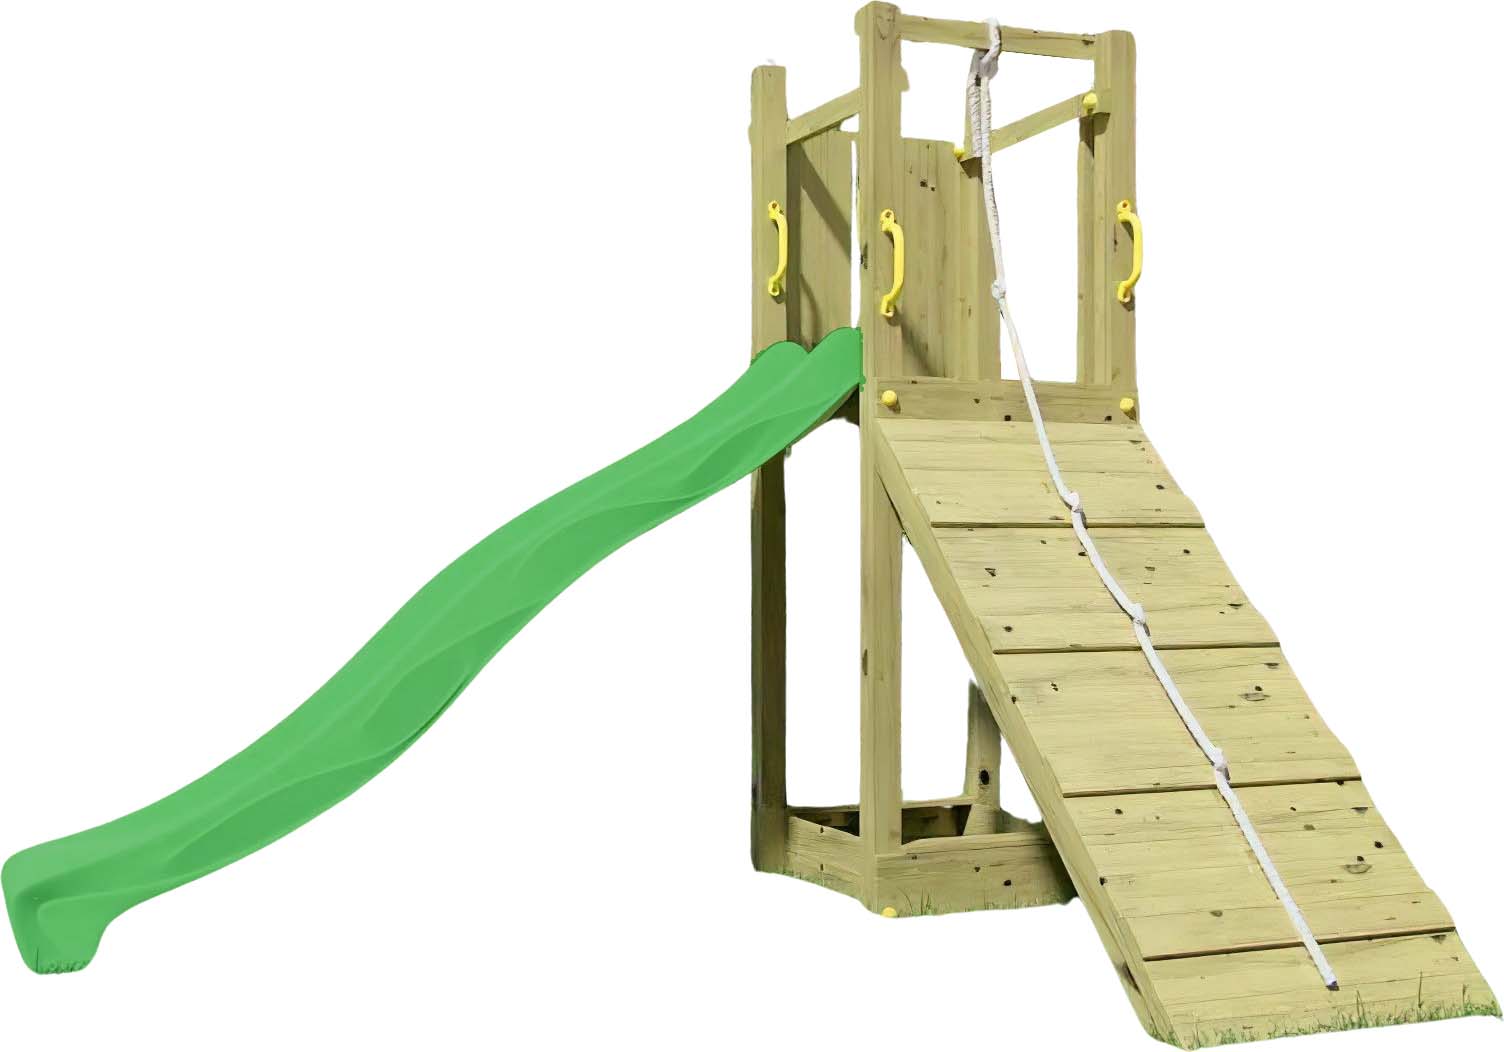 Tour de jeux pour enfants FUNNY 3 avec rampe et bac à sable - FUNGOO